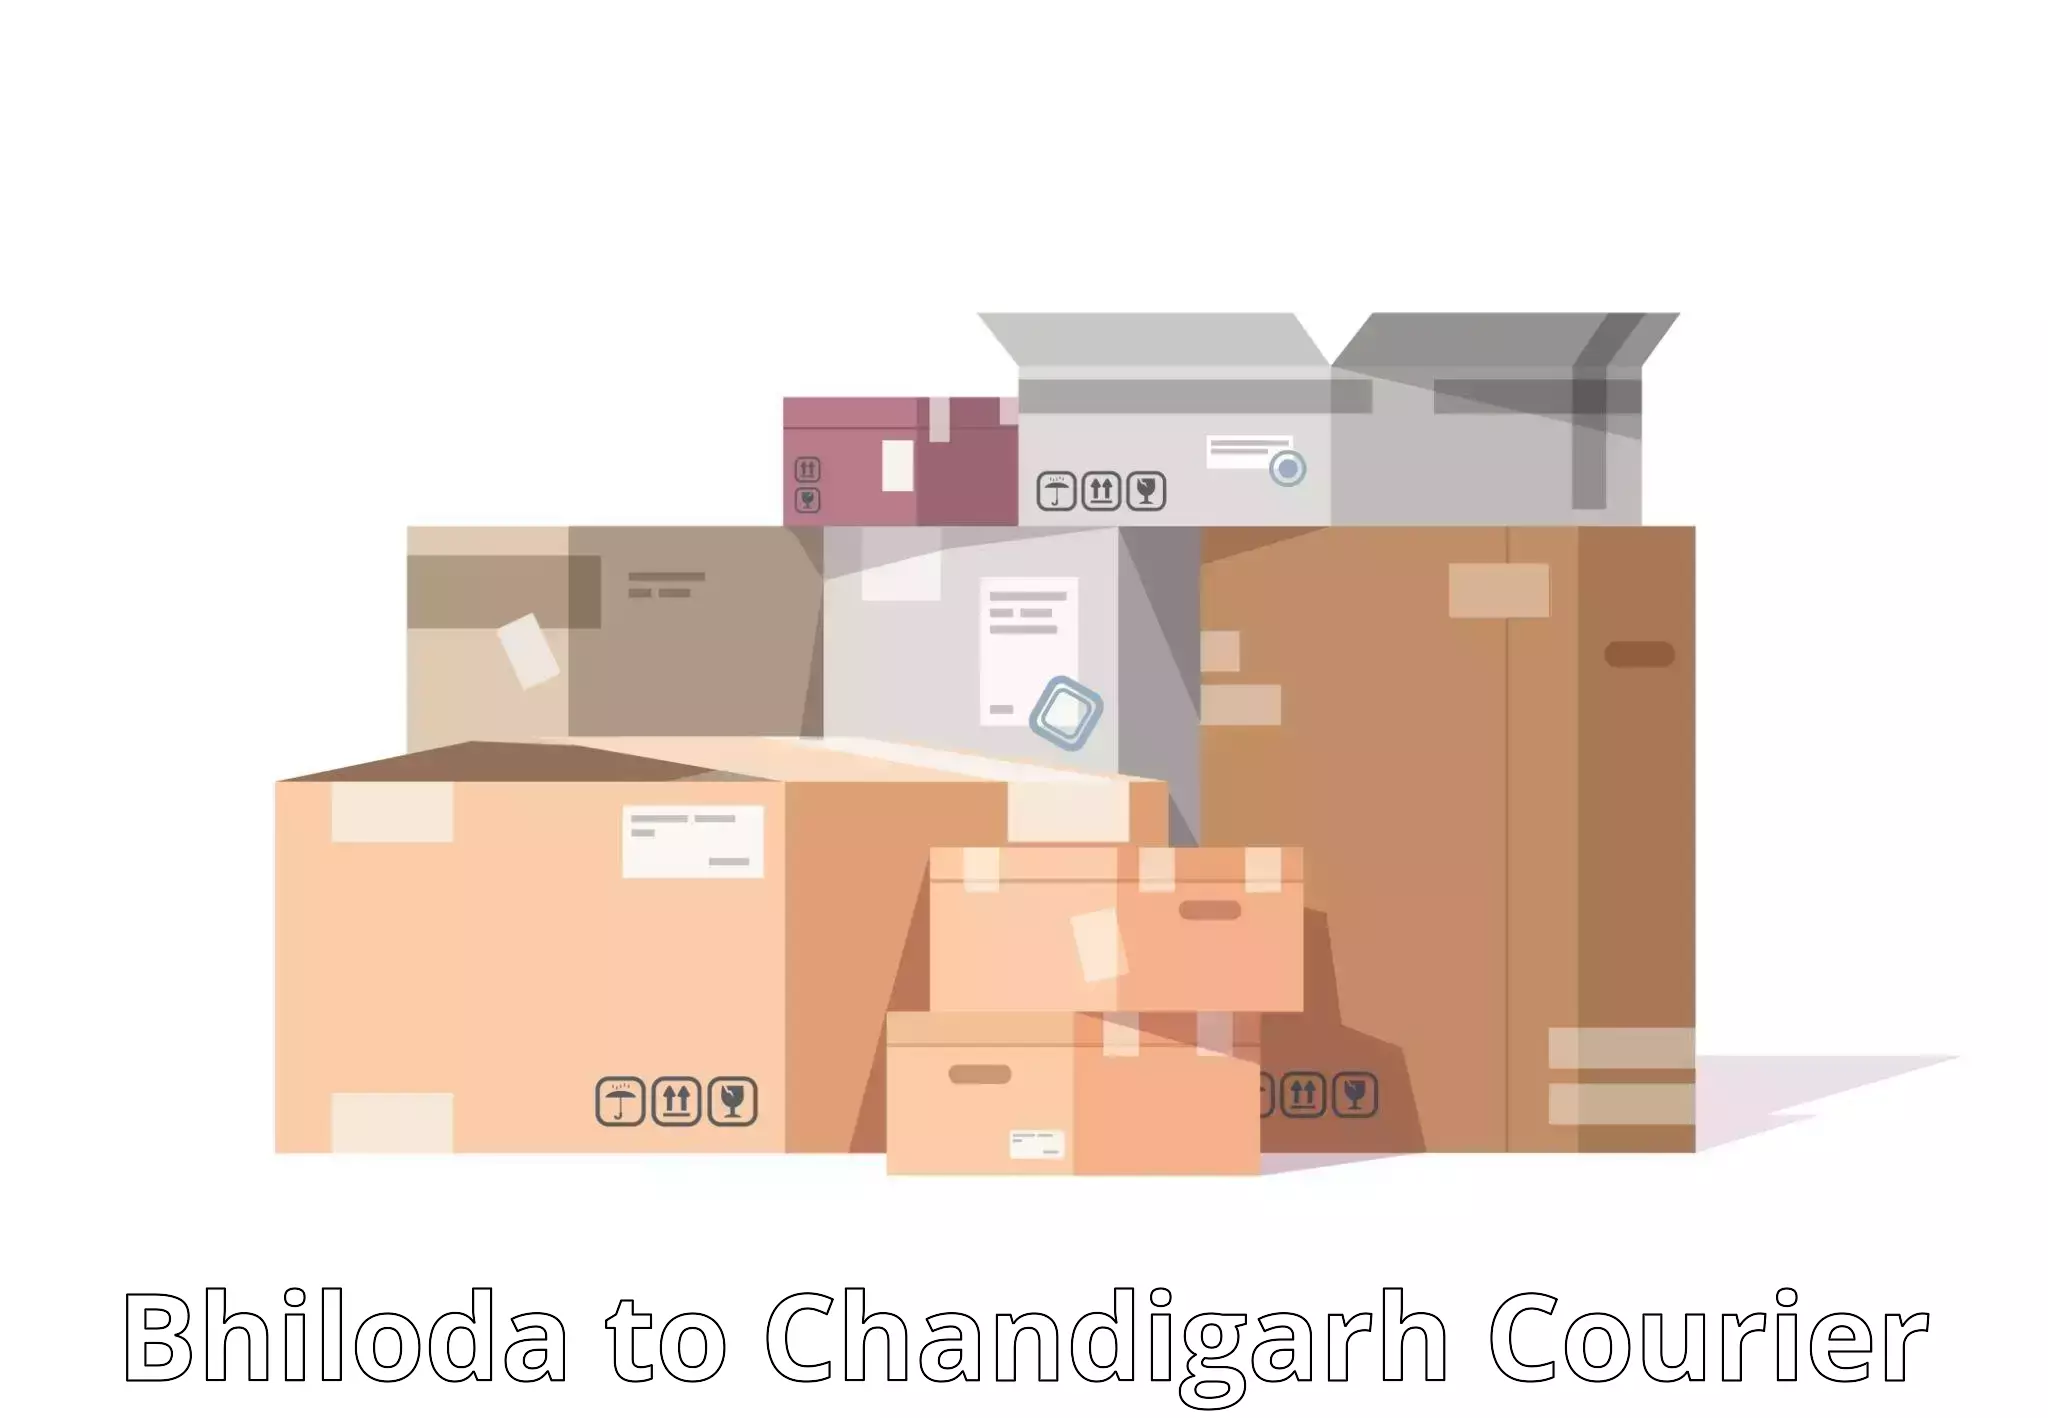 Efficient freight service Bhiloda to Chandigarh